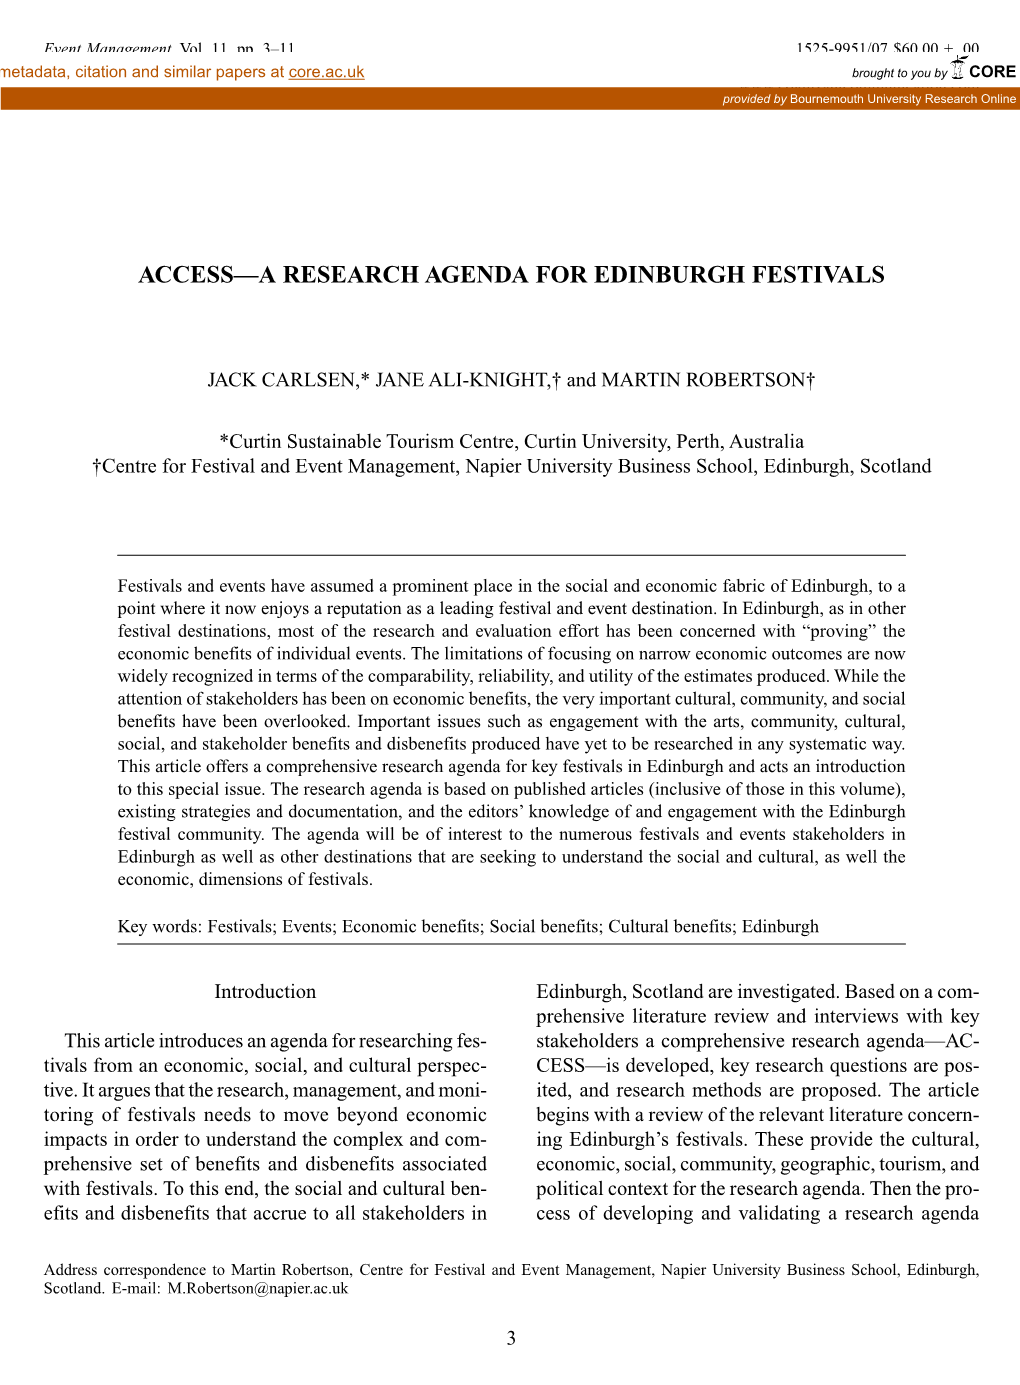 Access—A Research Agenda for Edinburgh Festivals